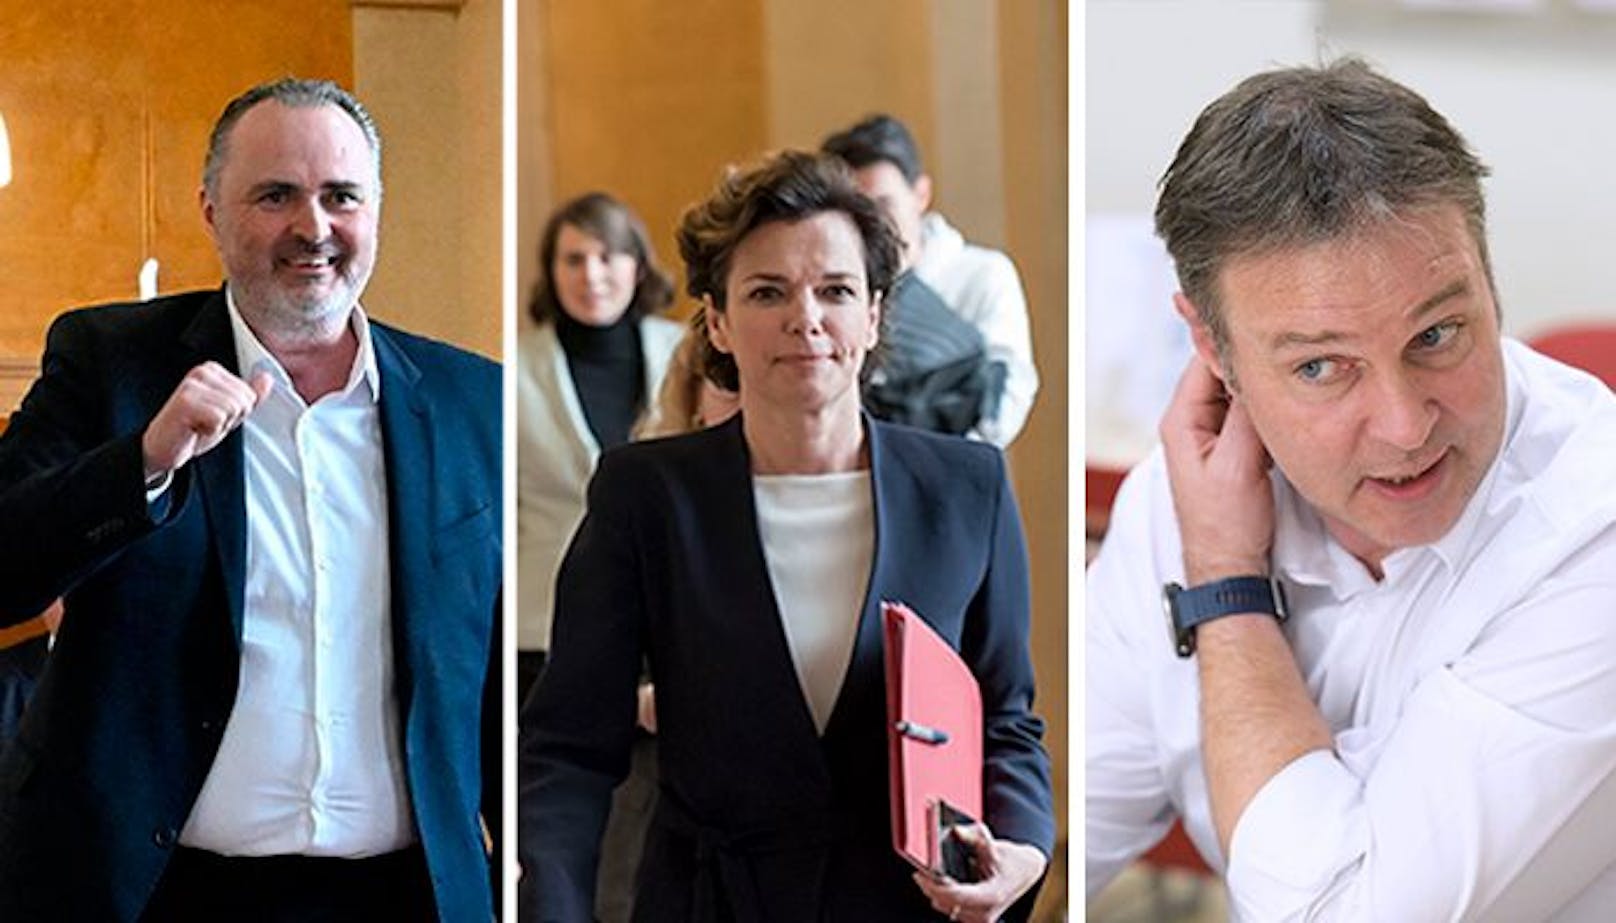 Im Rahmen einer Mitgliederbefragung gingen Hans Peter Doskozil, Pamela Rendi-Wagner und Andreas Babler ins Rennen um den SPÖ-Vorsitz. Babler setzte sich am Ein Sonderparteitag am 3. Juni schließlich durch.